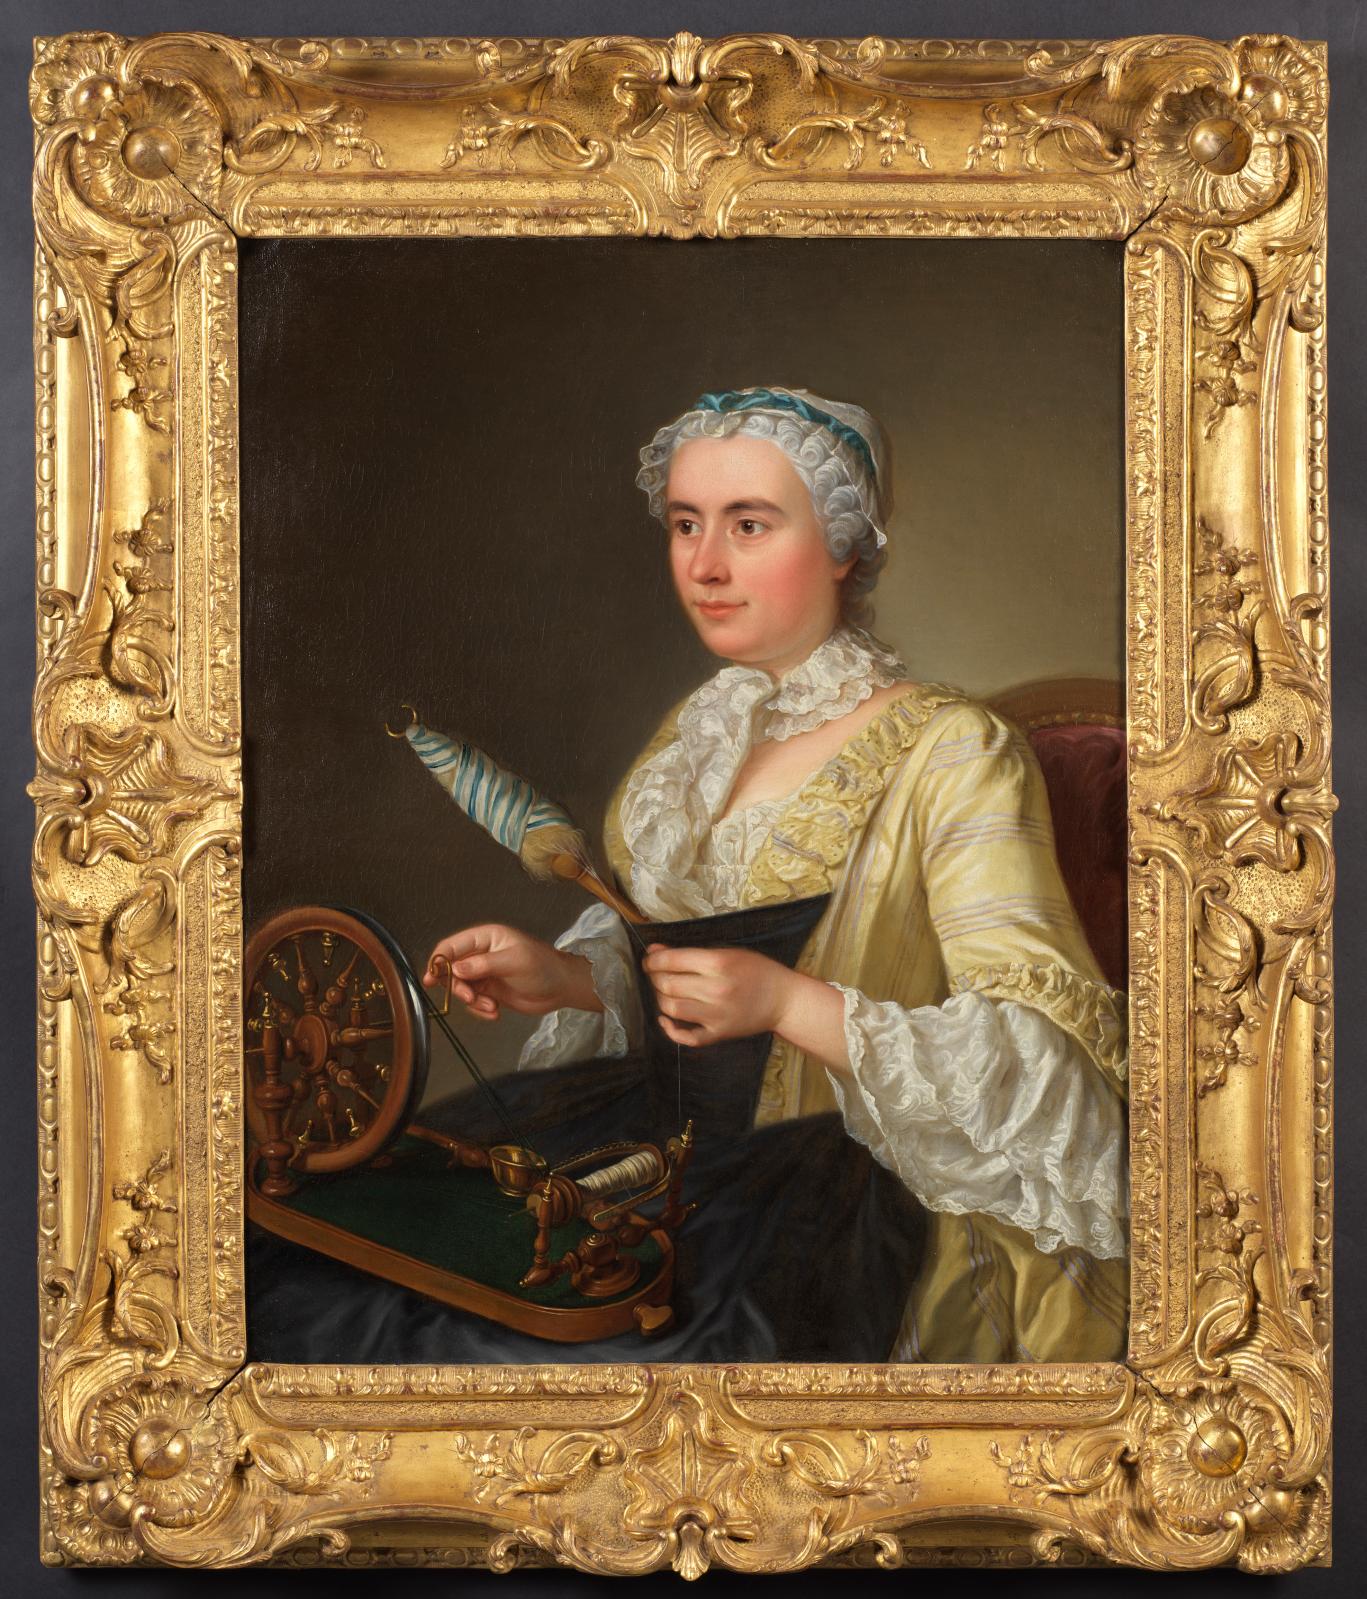 Dans la famille Bouchardon, Marie-Thérèse portraiturée par Jean-Baptiste Lefèbvre